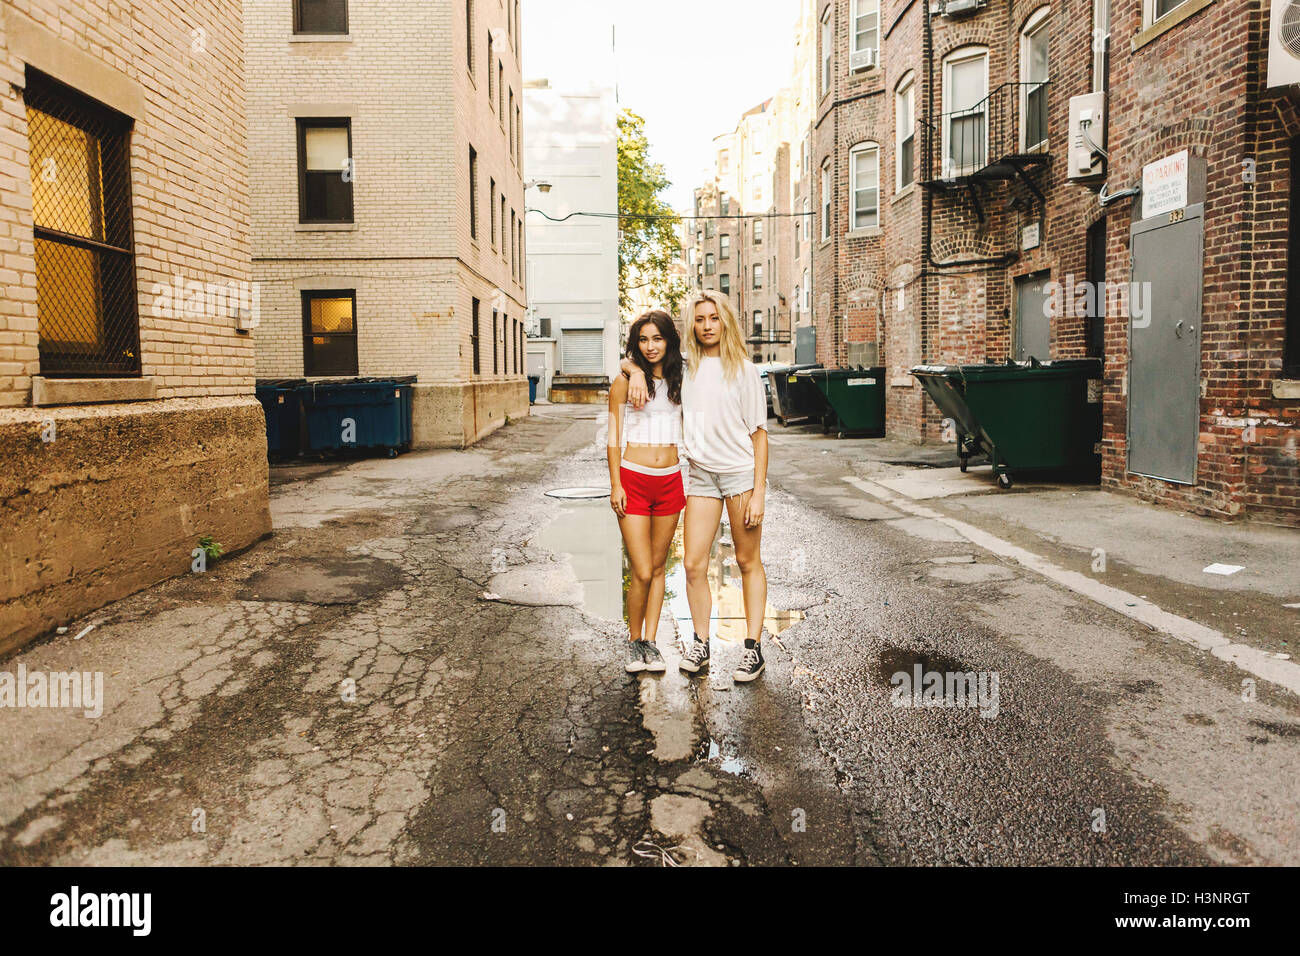 Women standing near puddle on road, Boston, MA, USA Stock Photo